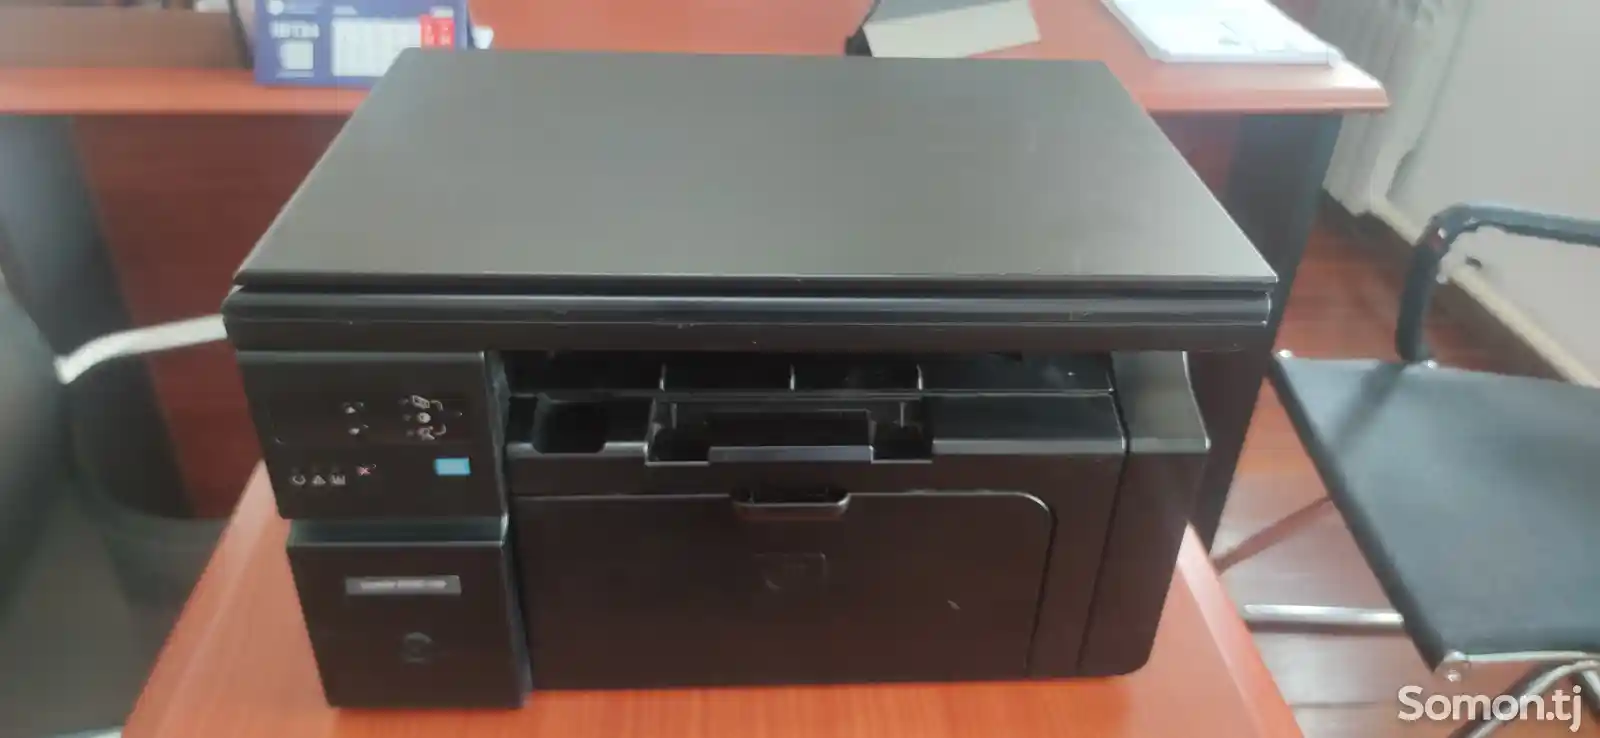 Принтер 3211 3 в 1-3